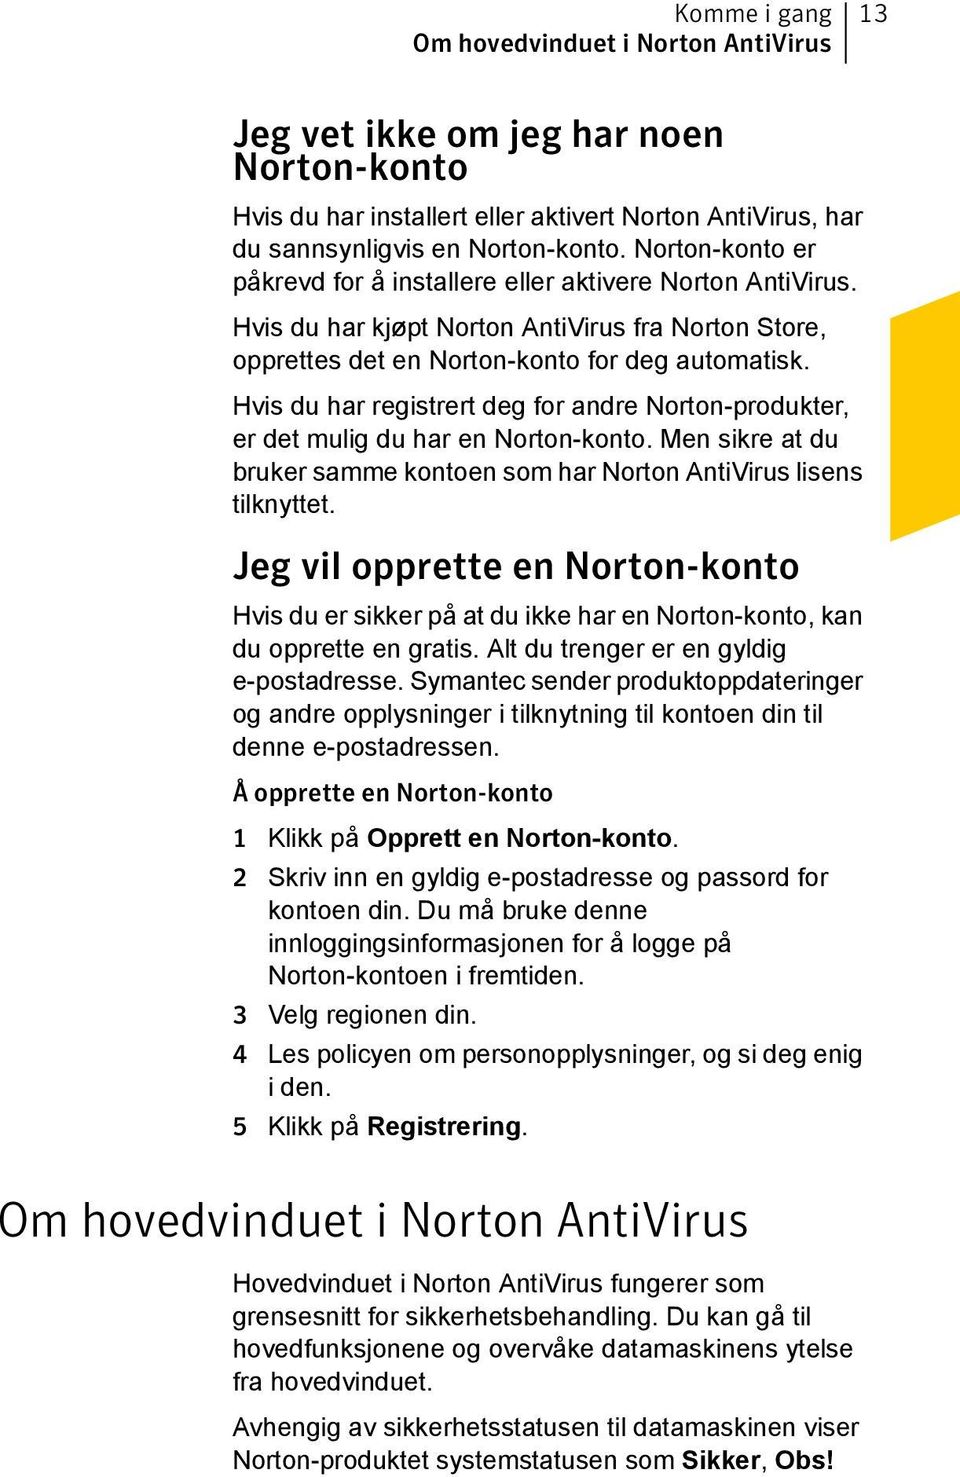 Hvis du har registrert deg for andre Norton-produkter, er det mulig du har en Norton-konto. Men sikre at du bruker samme kontoen som har Norton AntiVirus lisens tilknyttet.